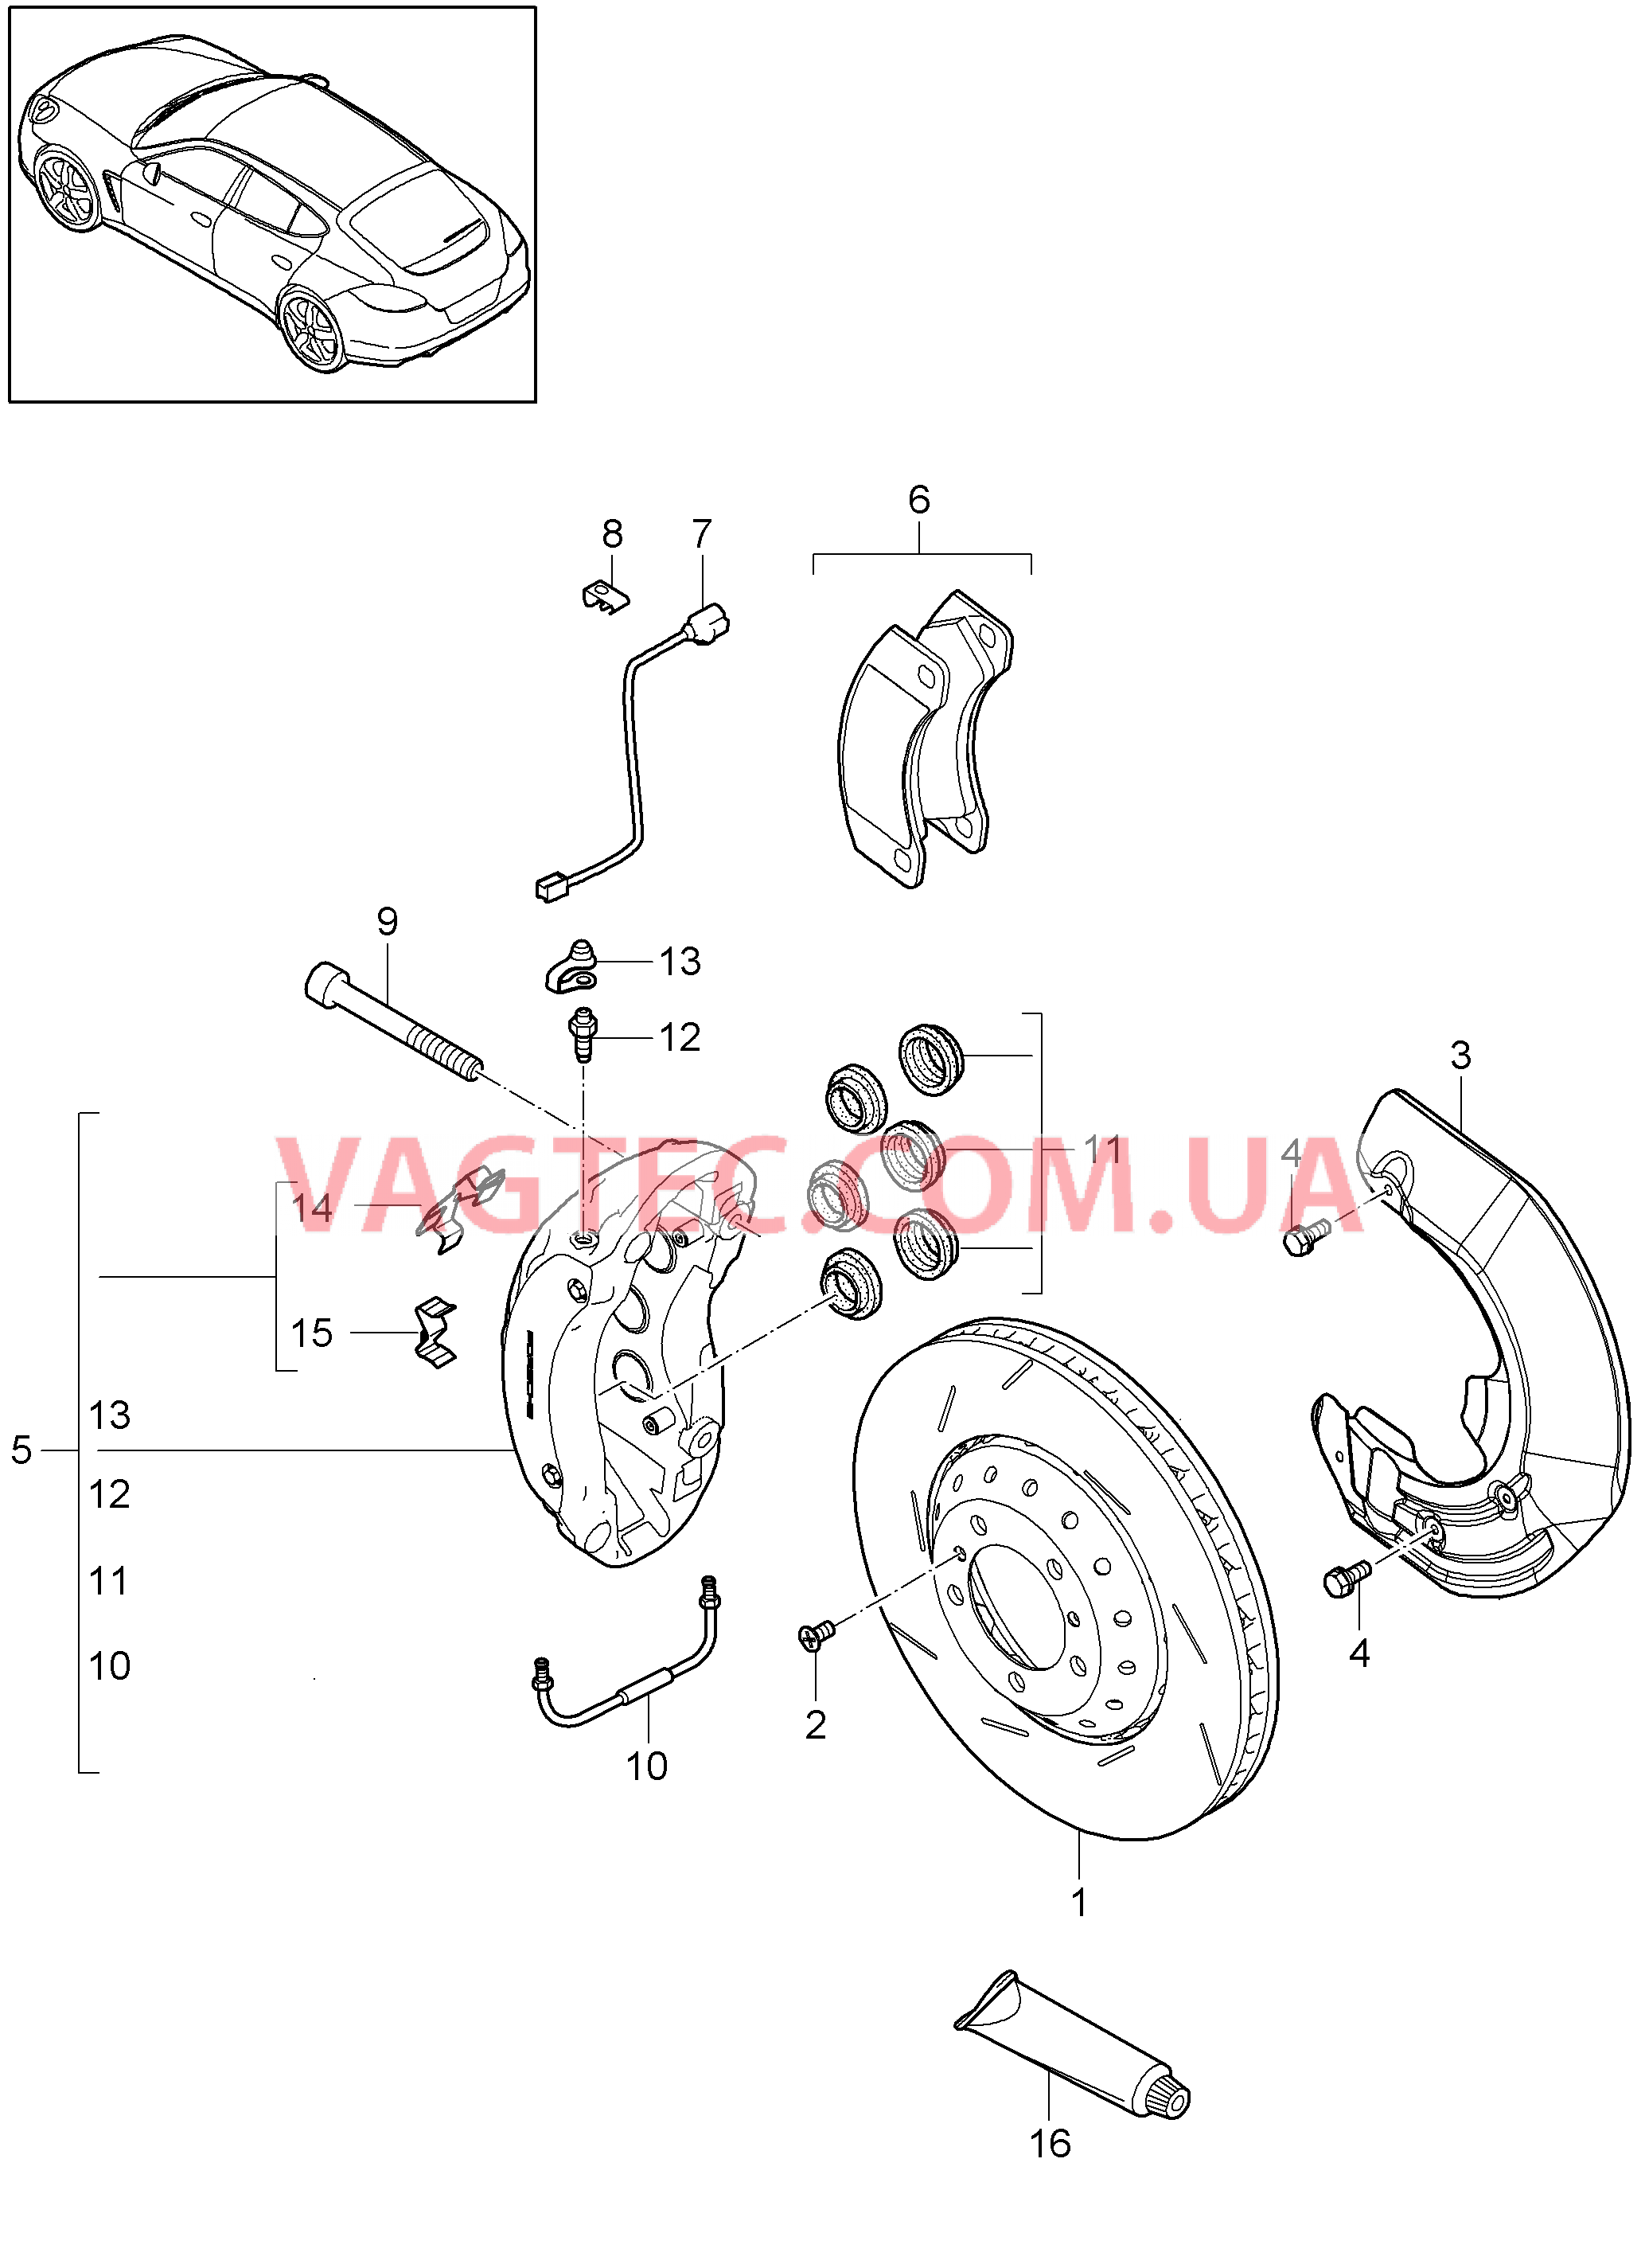 602-007 Дисковой тормоз, Передняя ось
						
						TURBO, MCW.BA, TURBO S, MCW.CA для PORSCHE Panamera 2010-2016USA